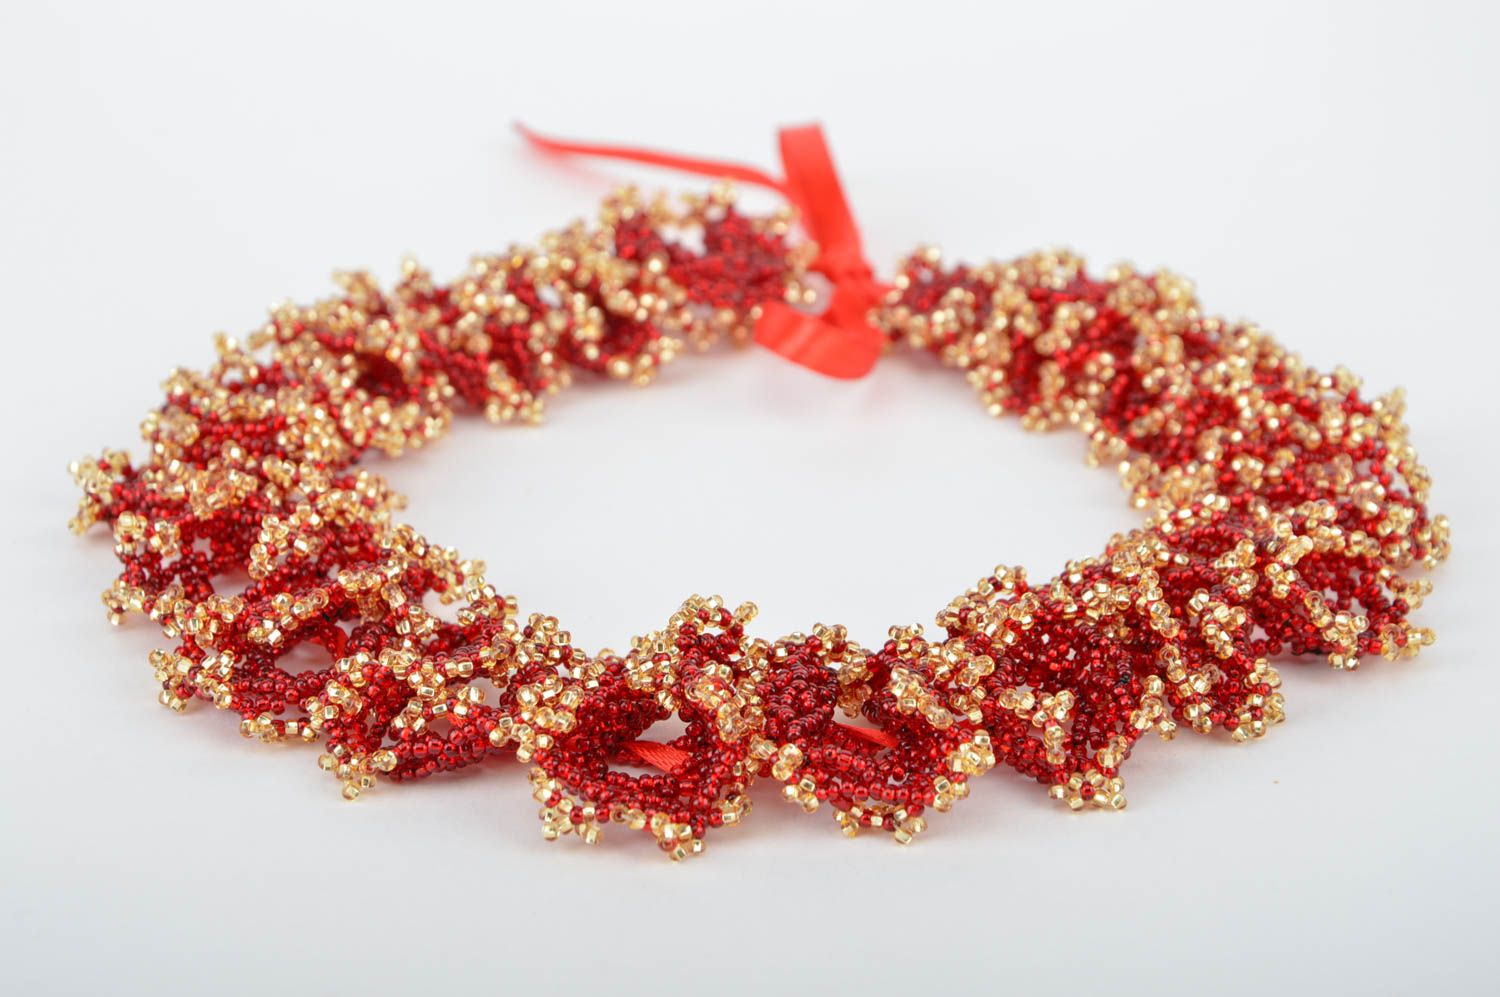 Ожерелье из бисера красное с золотом стильное необычное ручной работы  фото 5